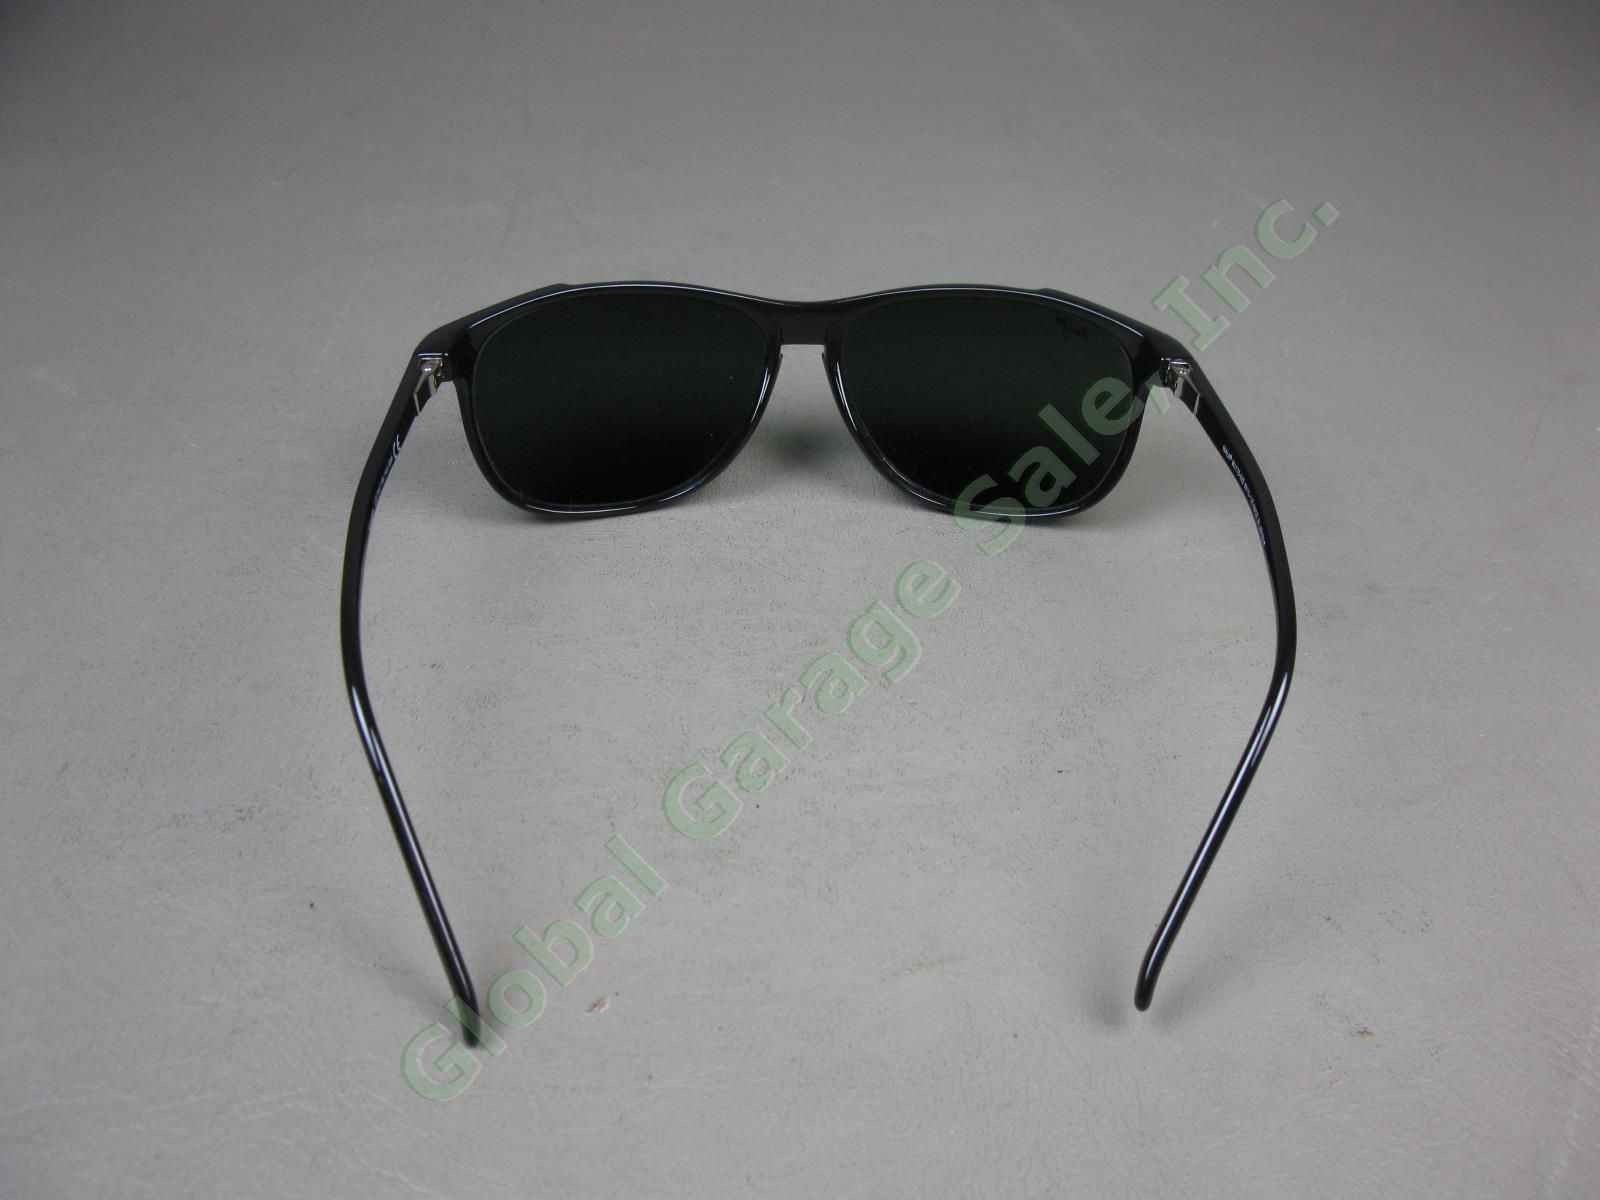 Maui Jim Voyager MJ178-02II 60/15-135 Polarized Lens Black Frame Sunglasses Lot 5